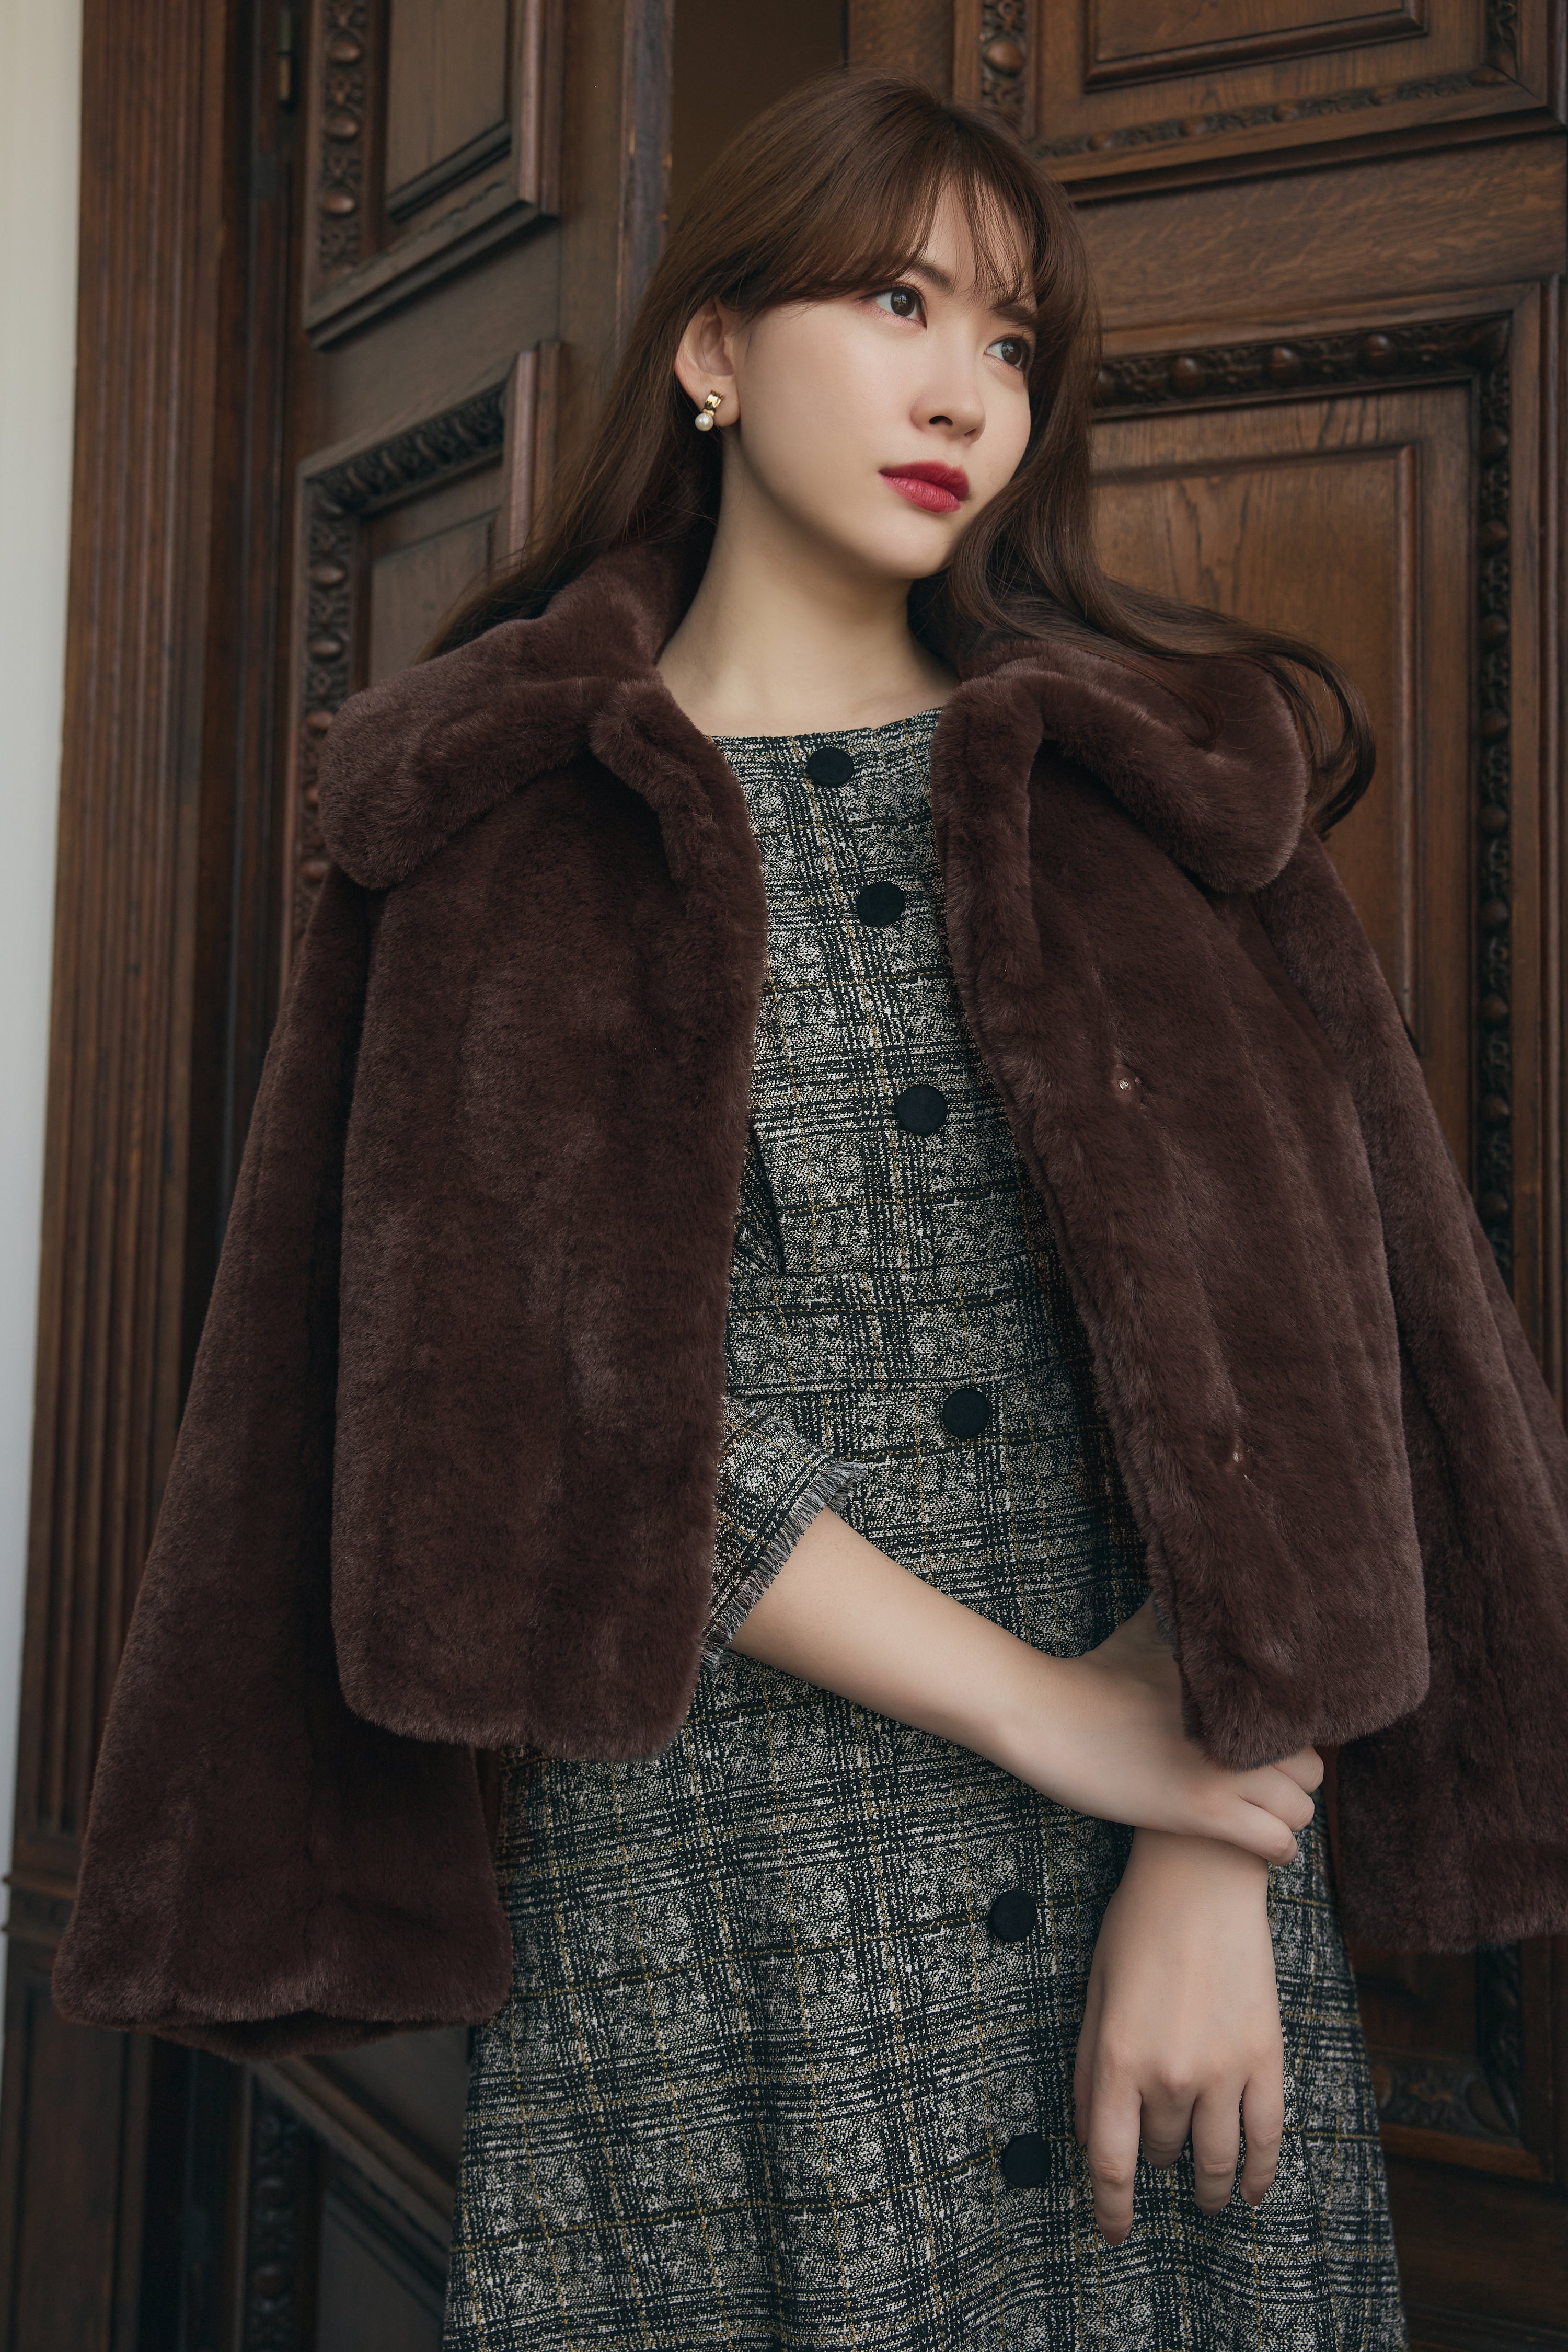 rich brown】【12月上旬発送】Winter Love Faux Fur Coat